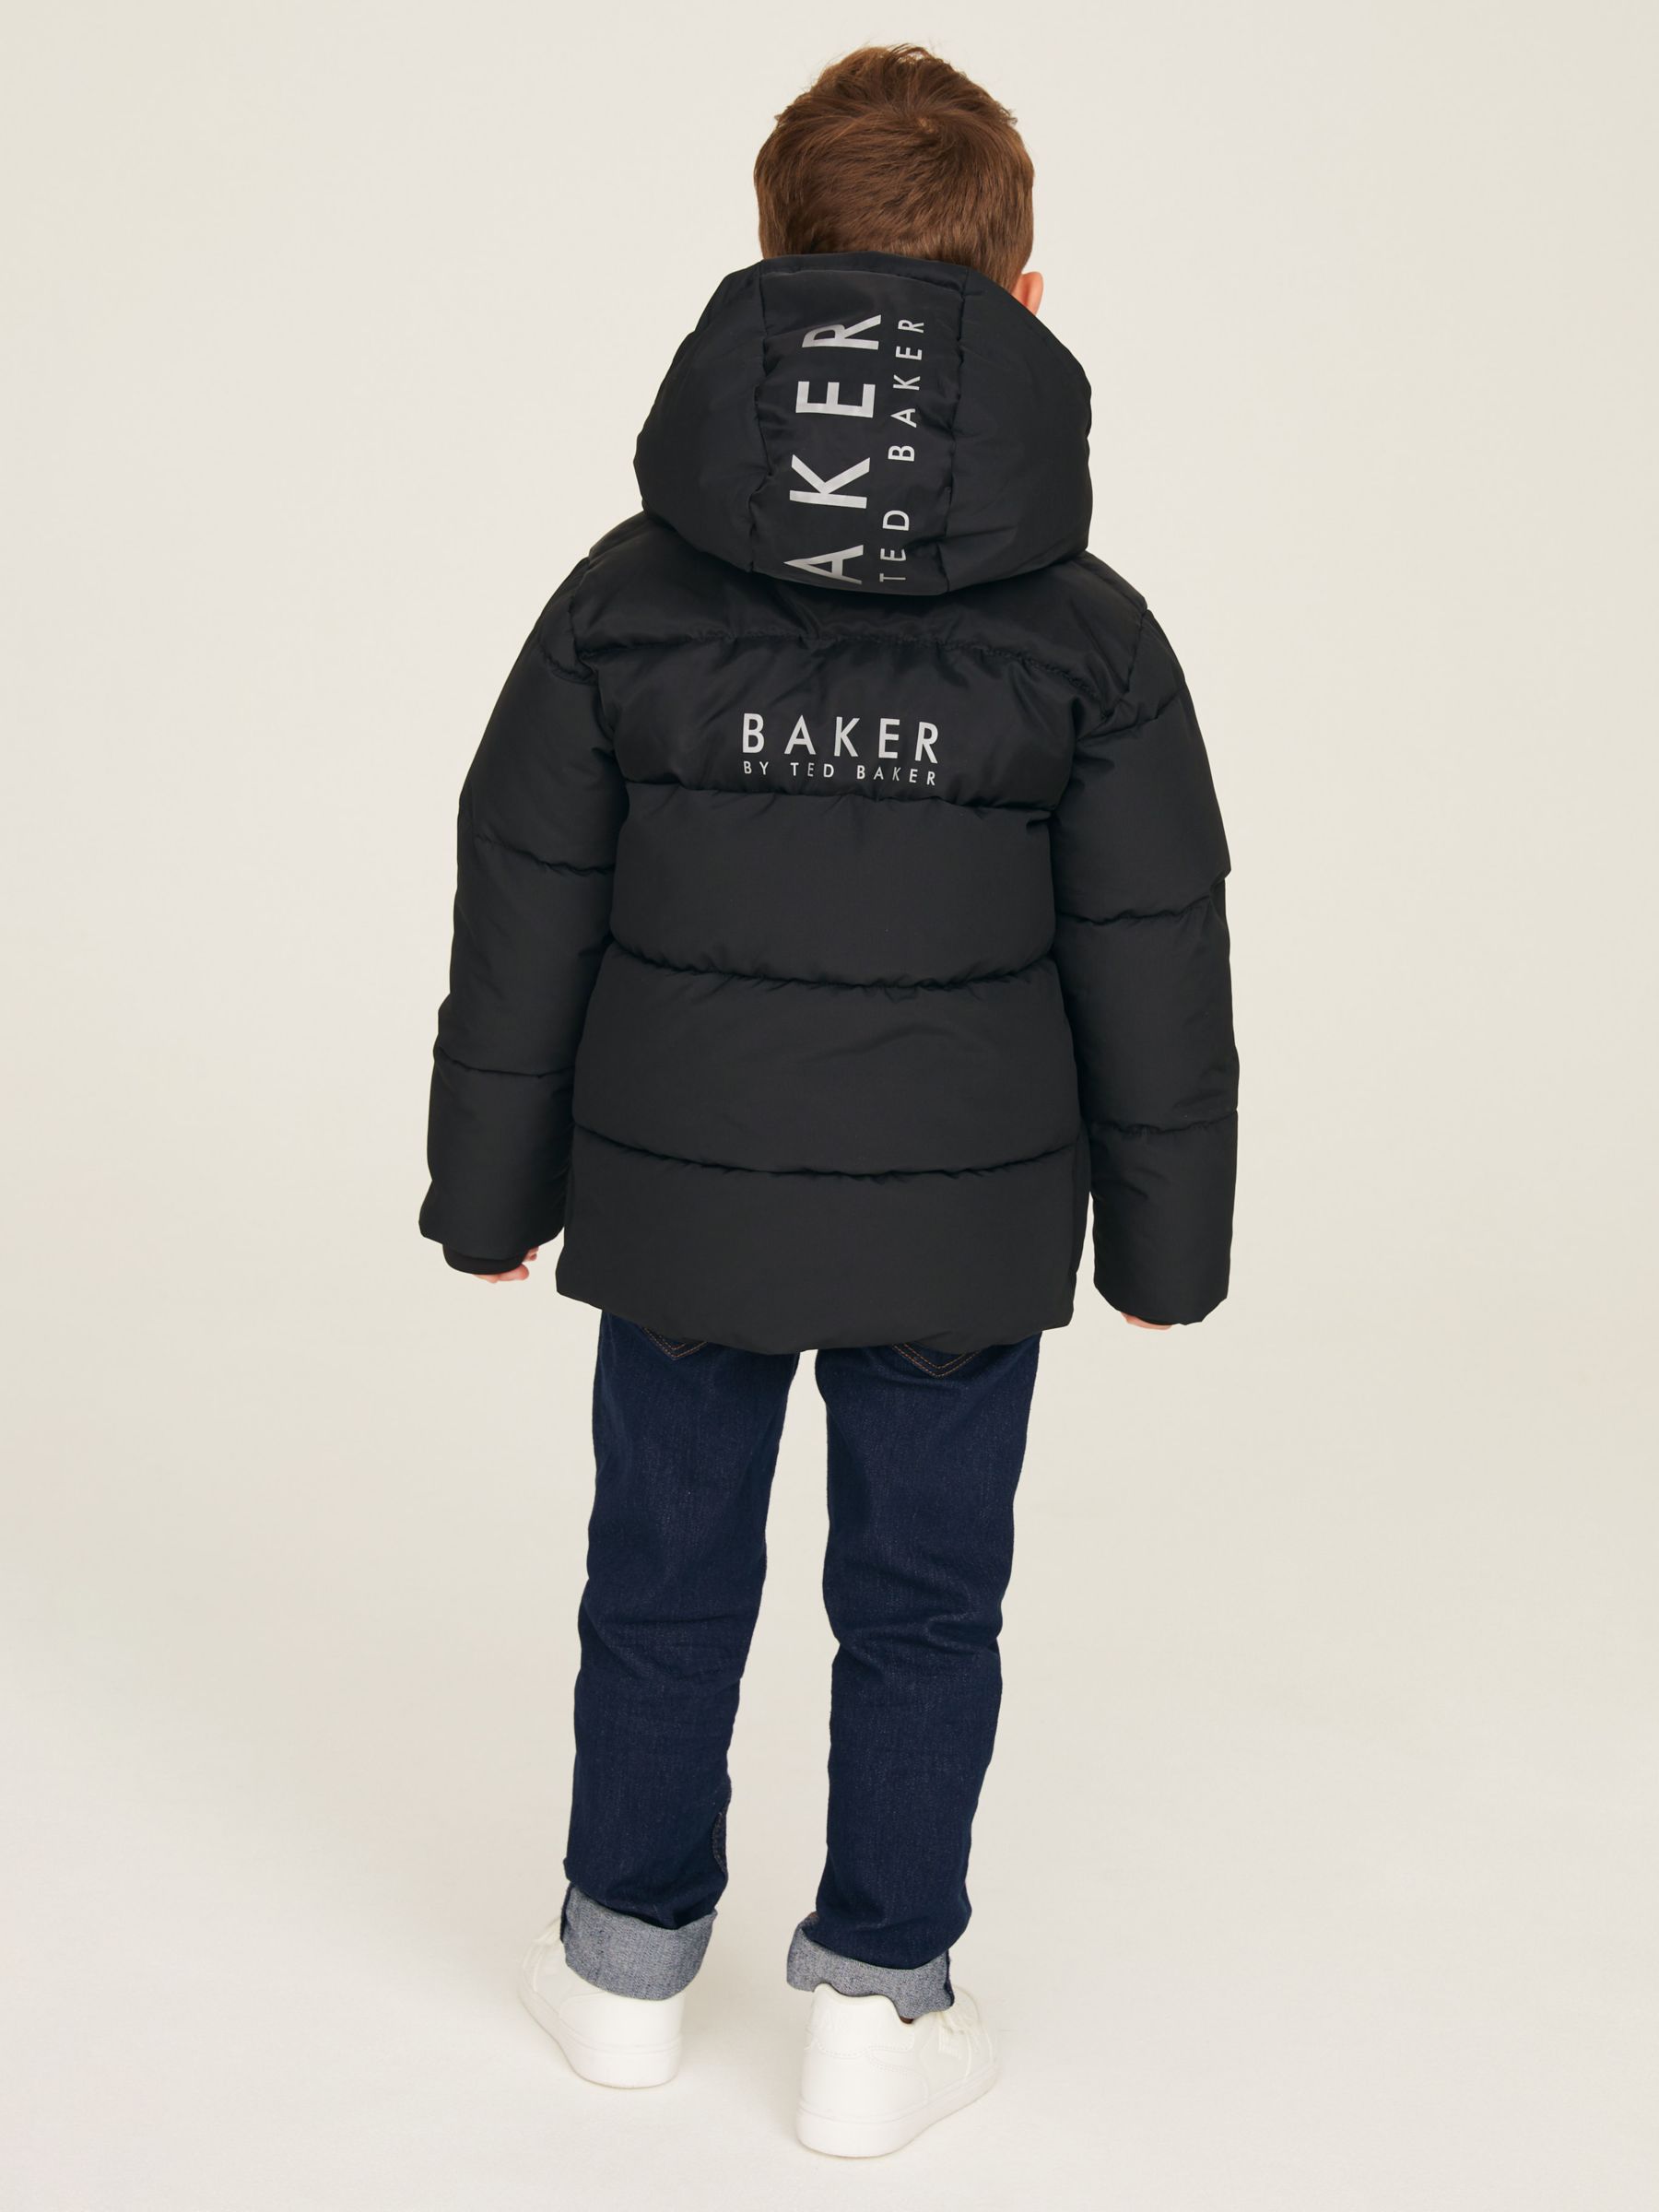 Ted Baker Kids' Baker Logo Puffer Jacket, Black, 7 years